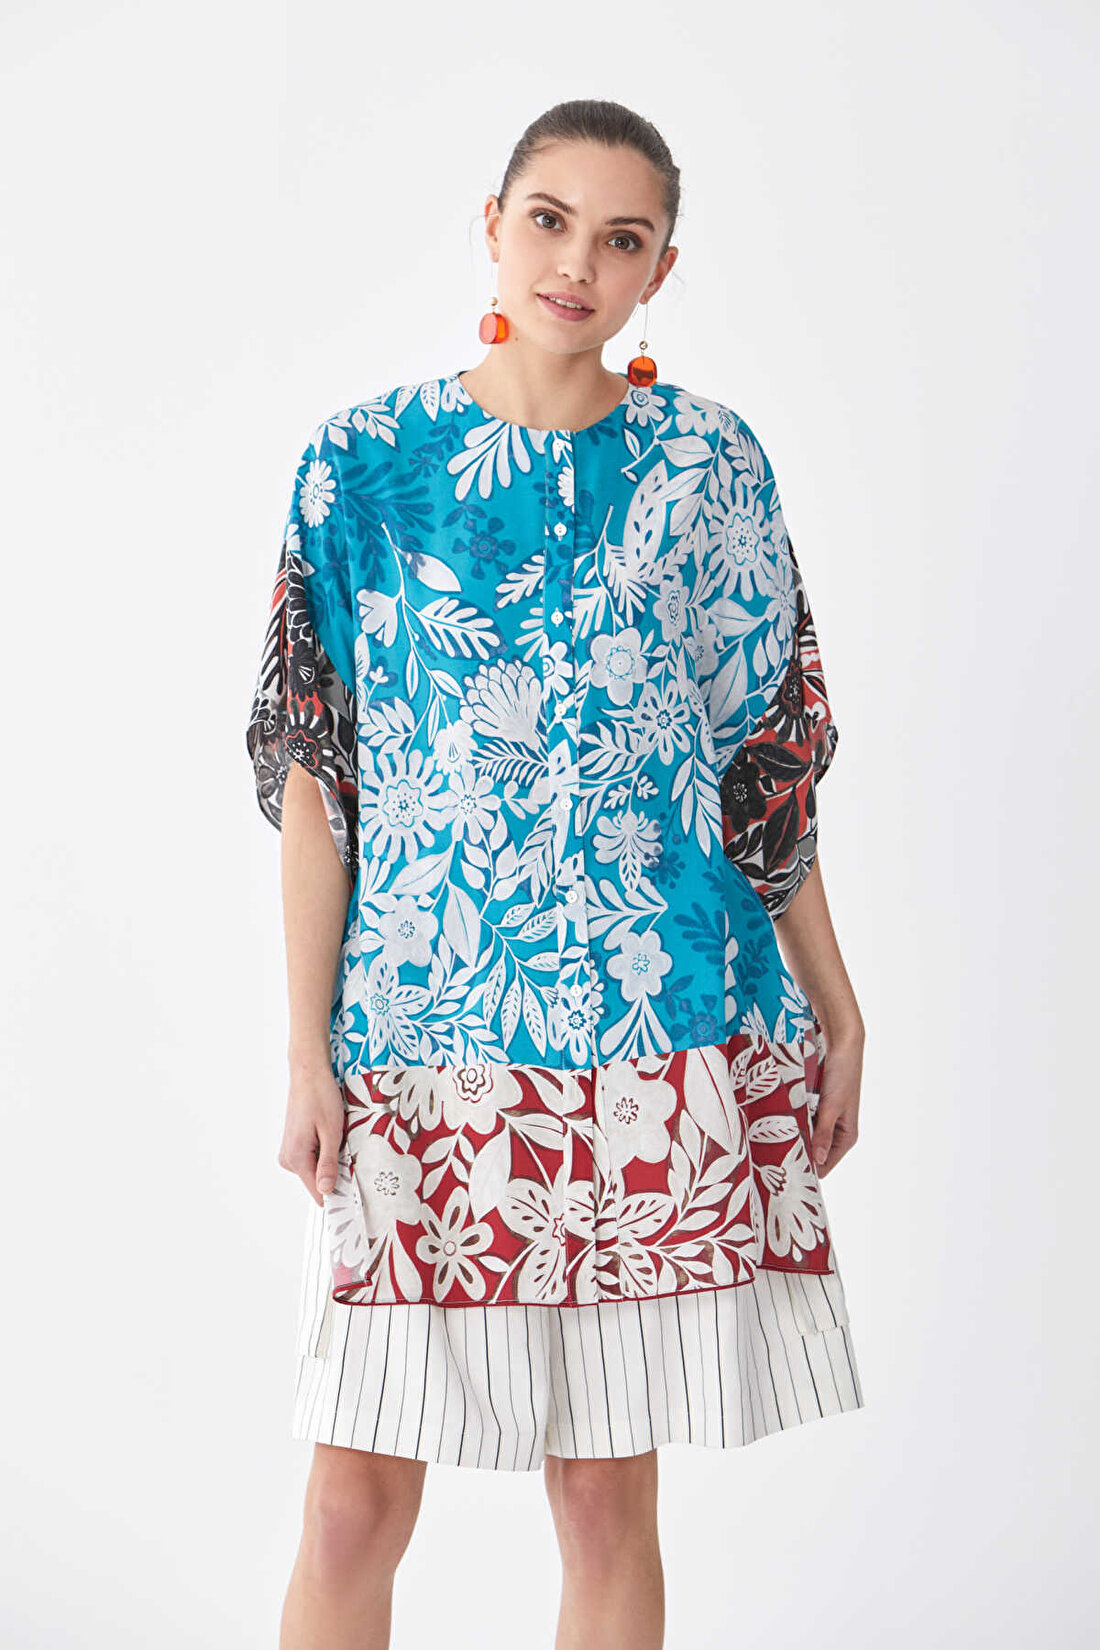 Desenli Kadın Gömlek Standart Renk Y2013514_089